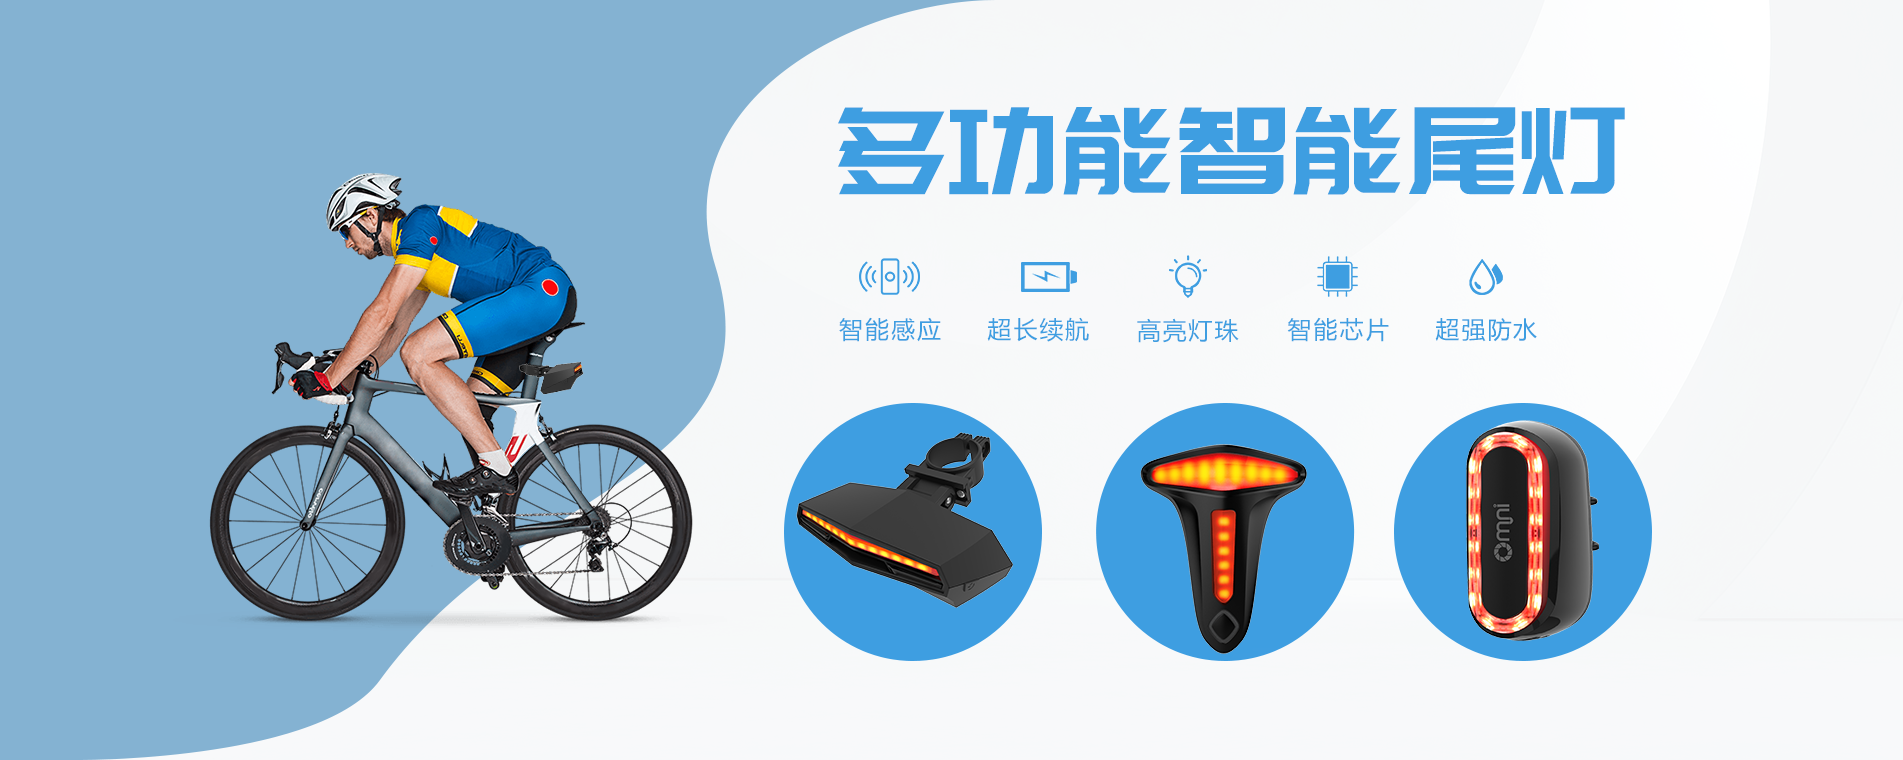 自行车尾灯,多功能智能尾灯,个人单车尾灯